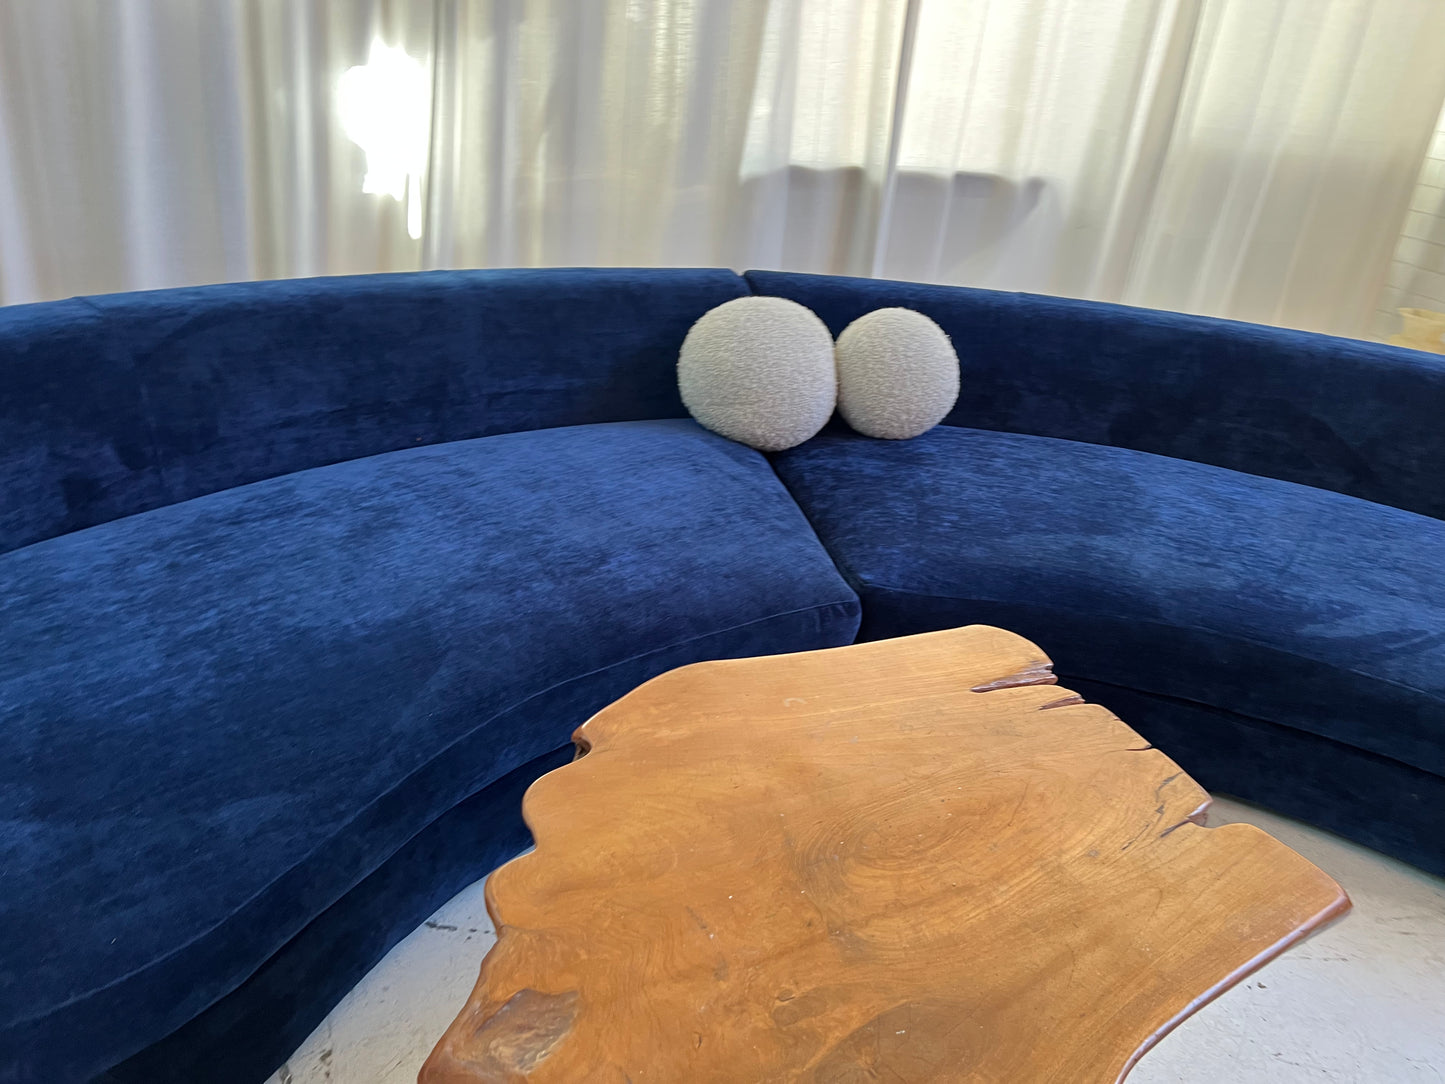 Bespoke Navy Velvet Curved Modular Sofa